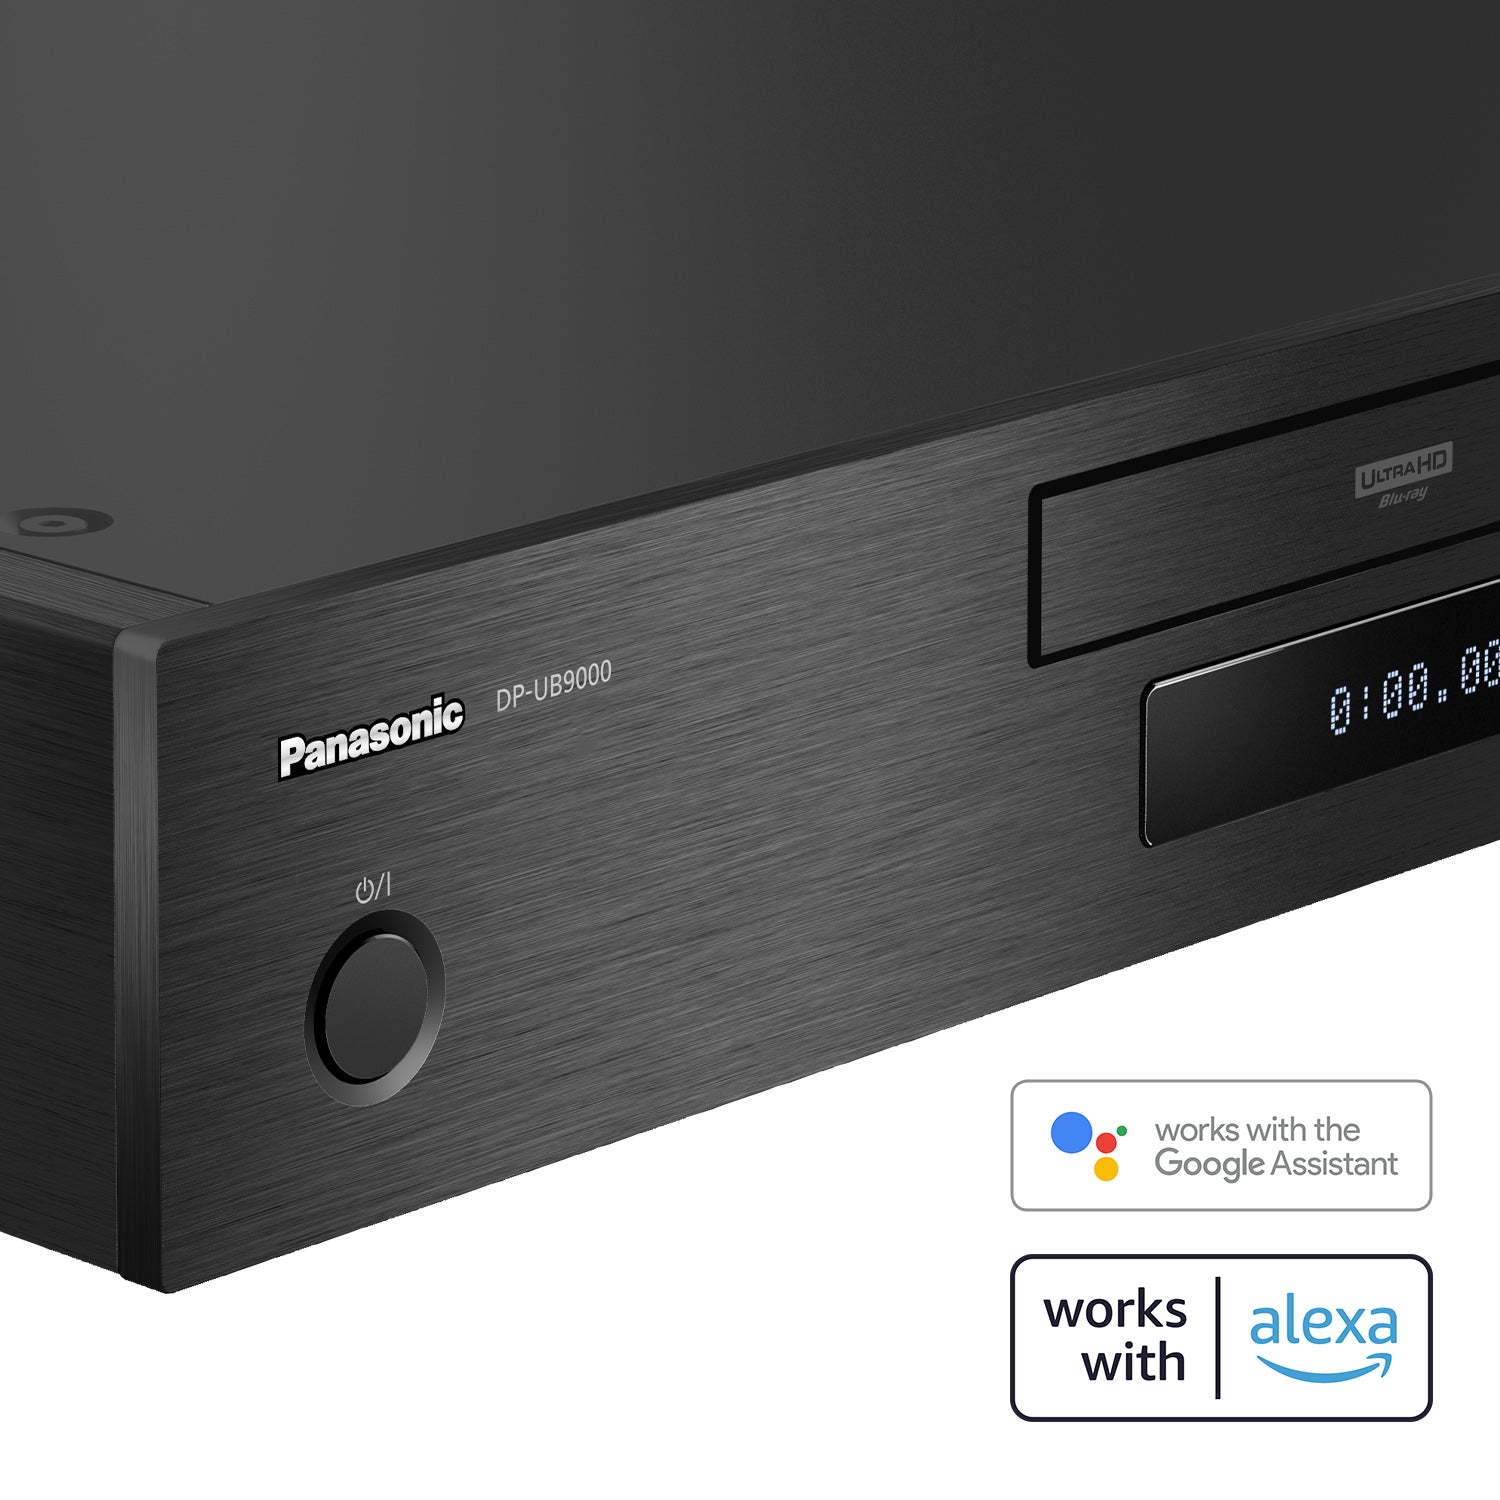  Panasonic DP-UB9000 4K Ultra HD Reproductor Blu-Ray UHD Multi  Región Blu-ray DVD, reproductor libre de región 110 voltios paquete con  cable HDMI Dynastar (renovado) : Electrónica